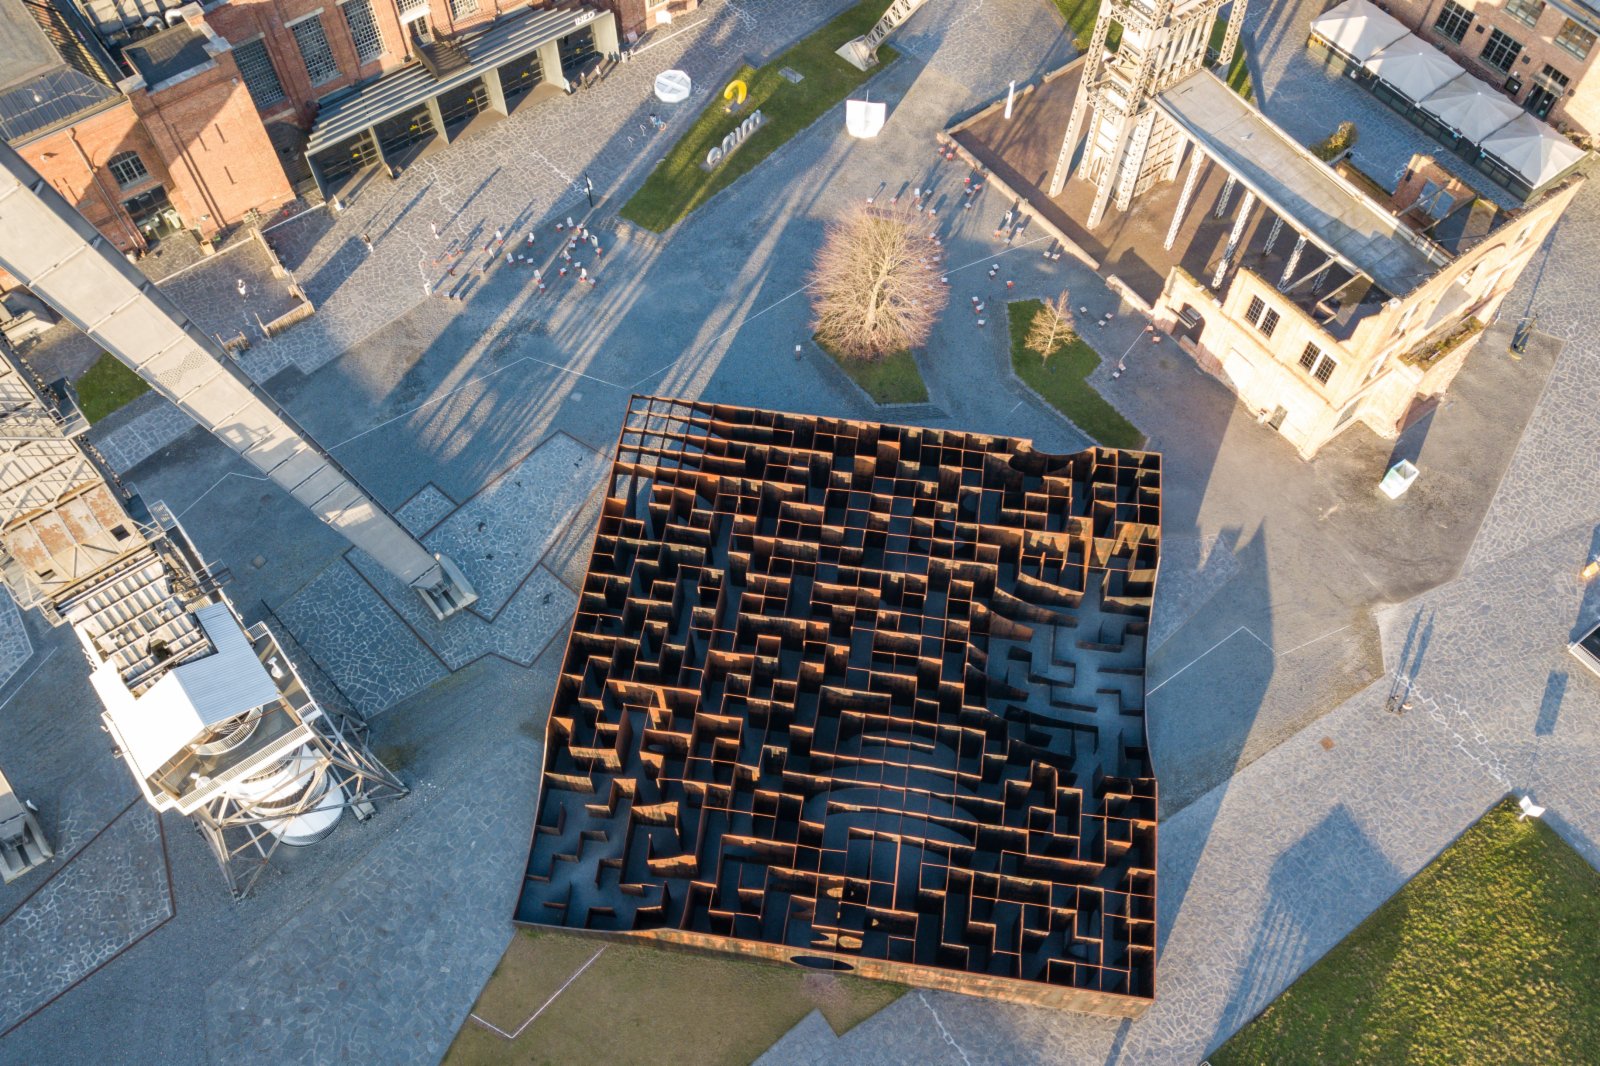 這是3月2日在比利時亨克市C-Mine藝術中心拍攝的裝置作品「迷宮」。